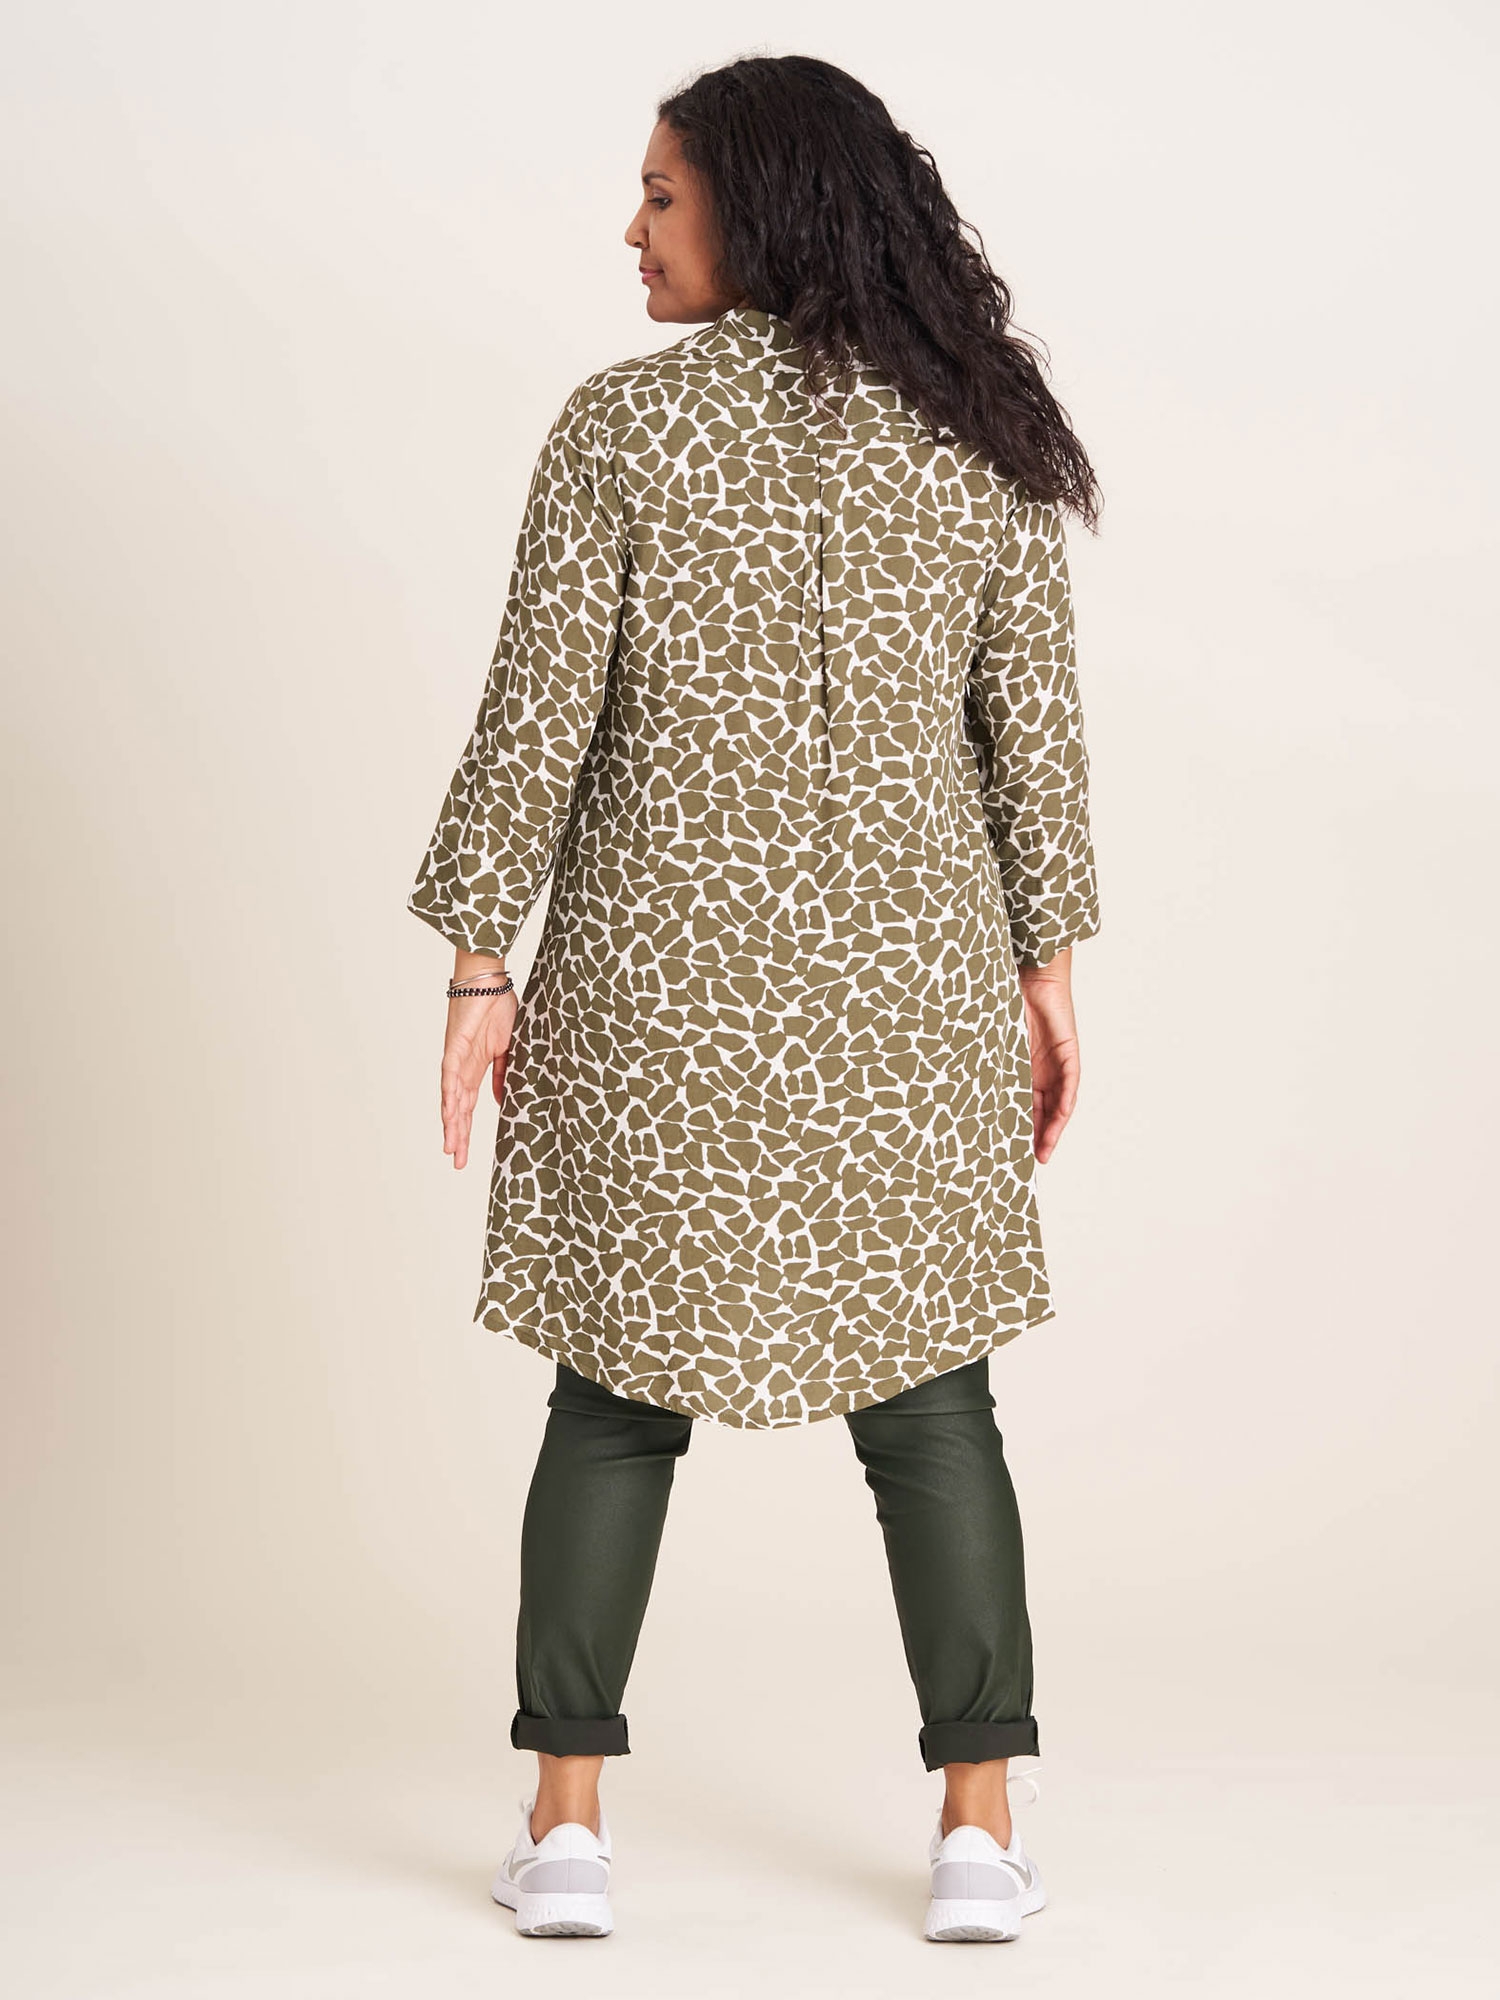 EMILIE - Lys skjorte tunika med super flot grønt 'giraf' print fra Studio